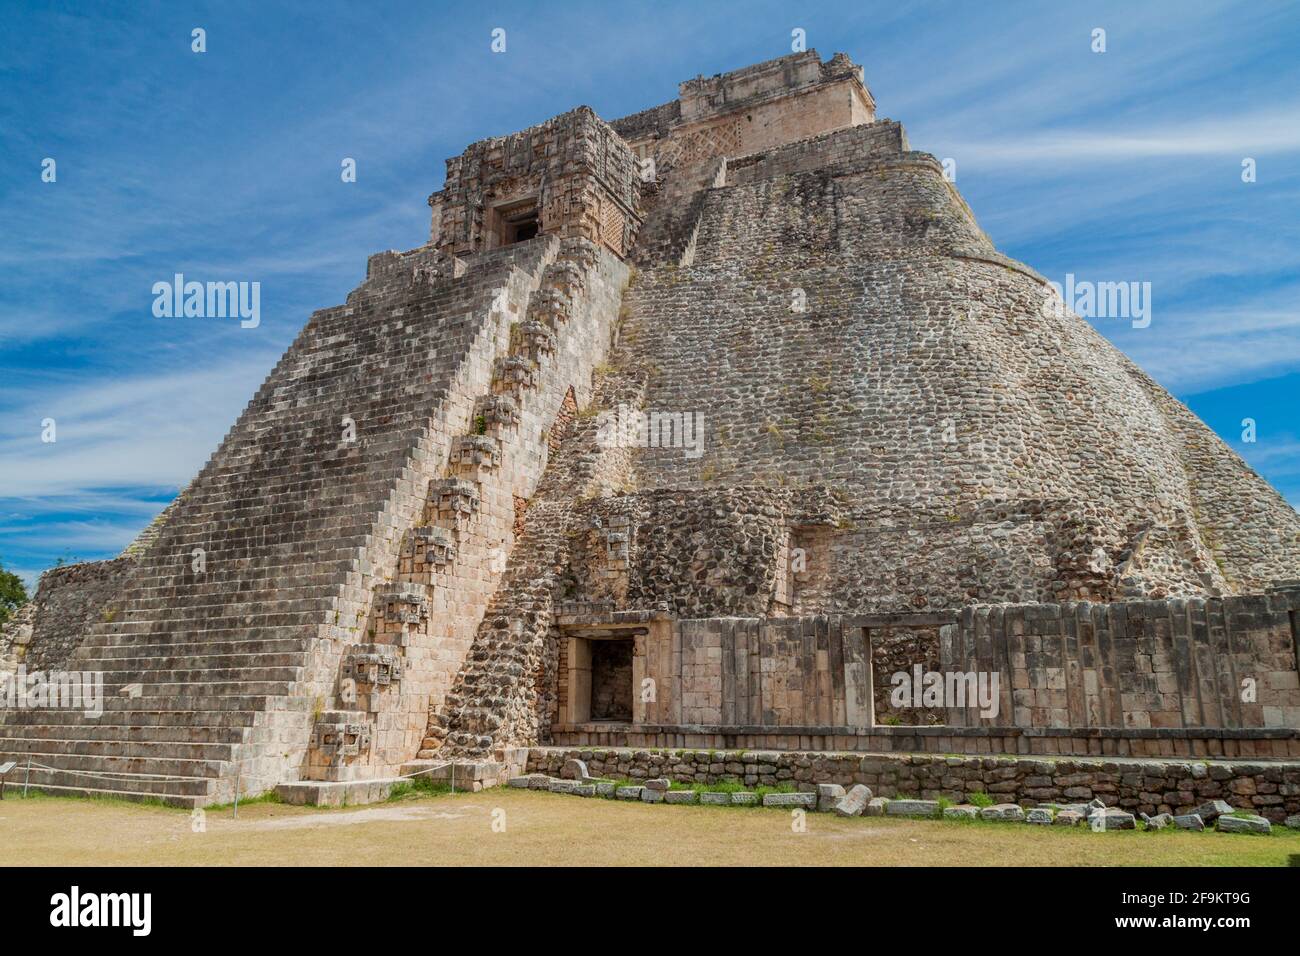 Pyramid of the Magician Piramide del adivino at the ruins of the ancient Mayan city Uxmal, Mexico Stock Photo